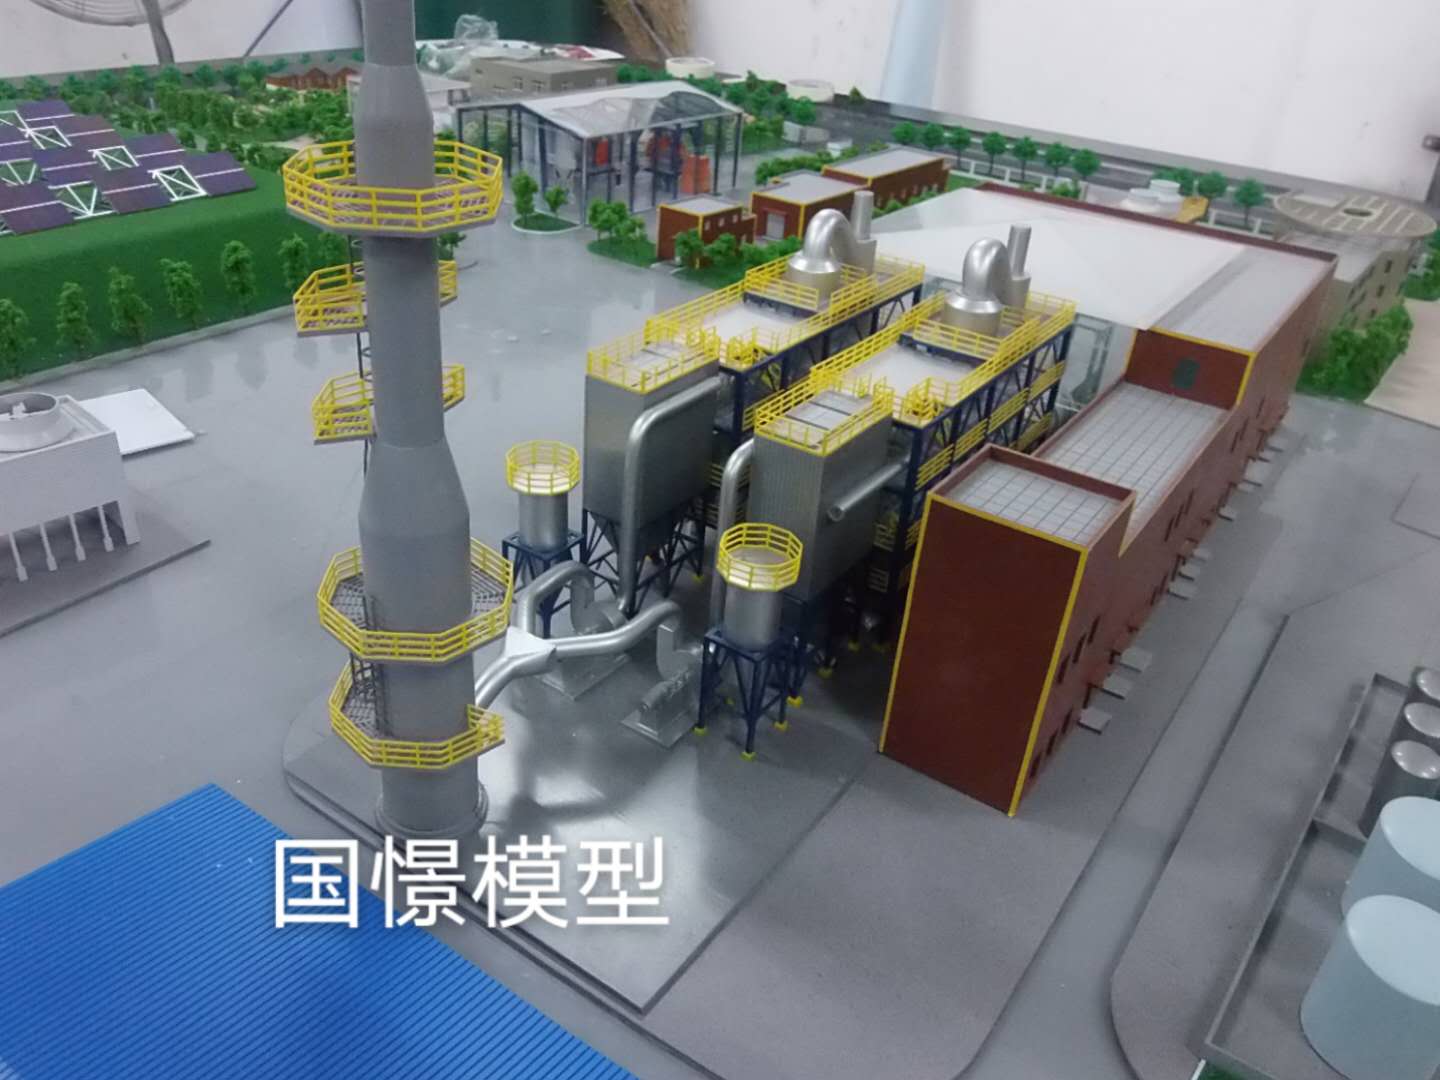 平原县工业模型